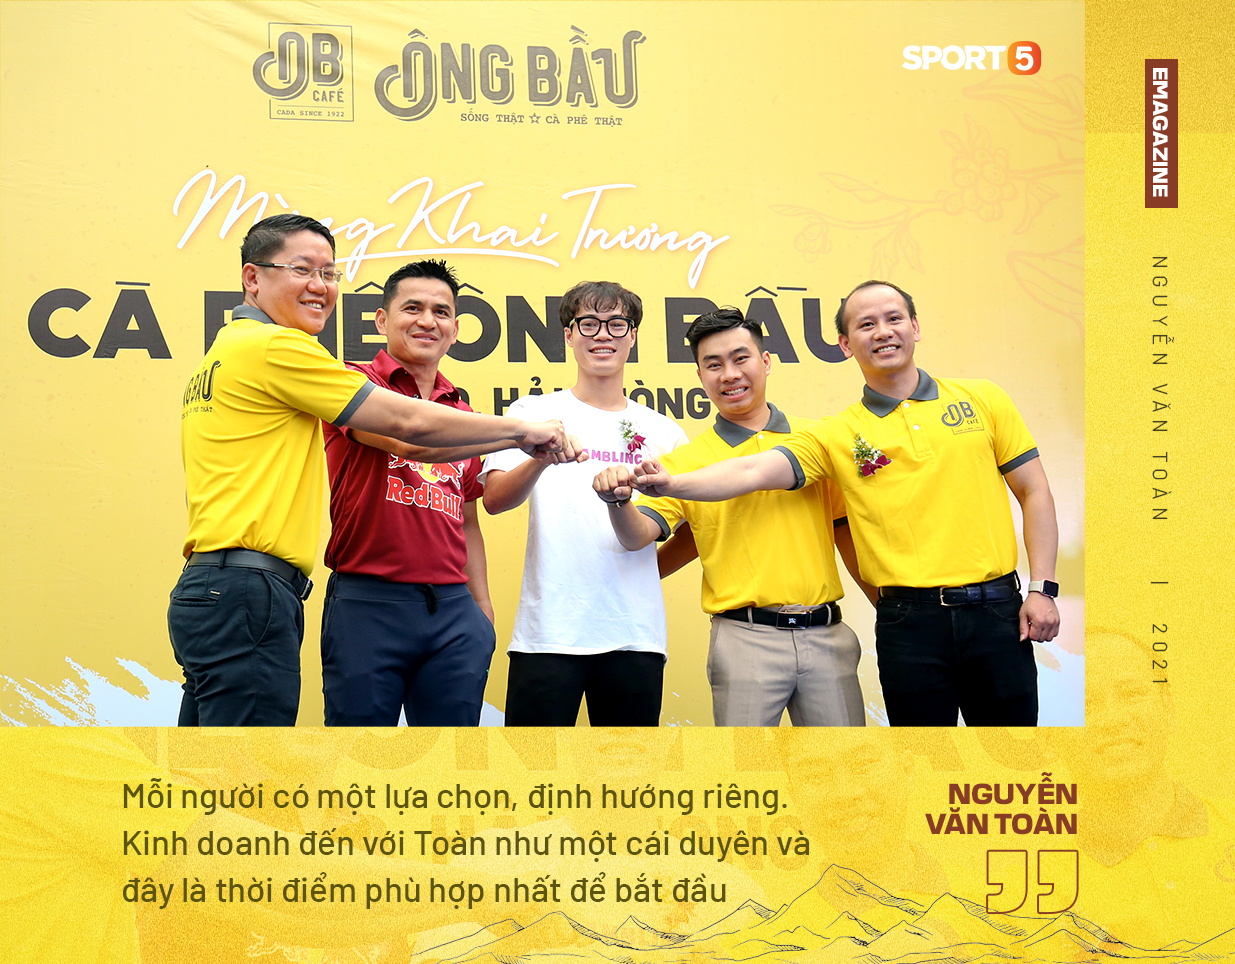 Nguyễn Văn Toàn: "Tôi muốn được nhớ đến là một cầu thủ thành công, và doanh nhân thành đạt"  - Ảnh 1.